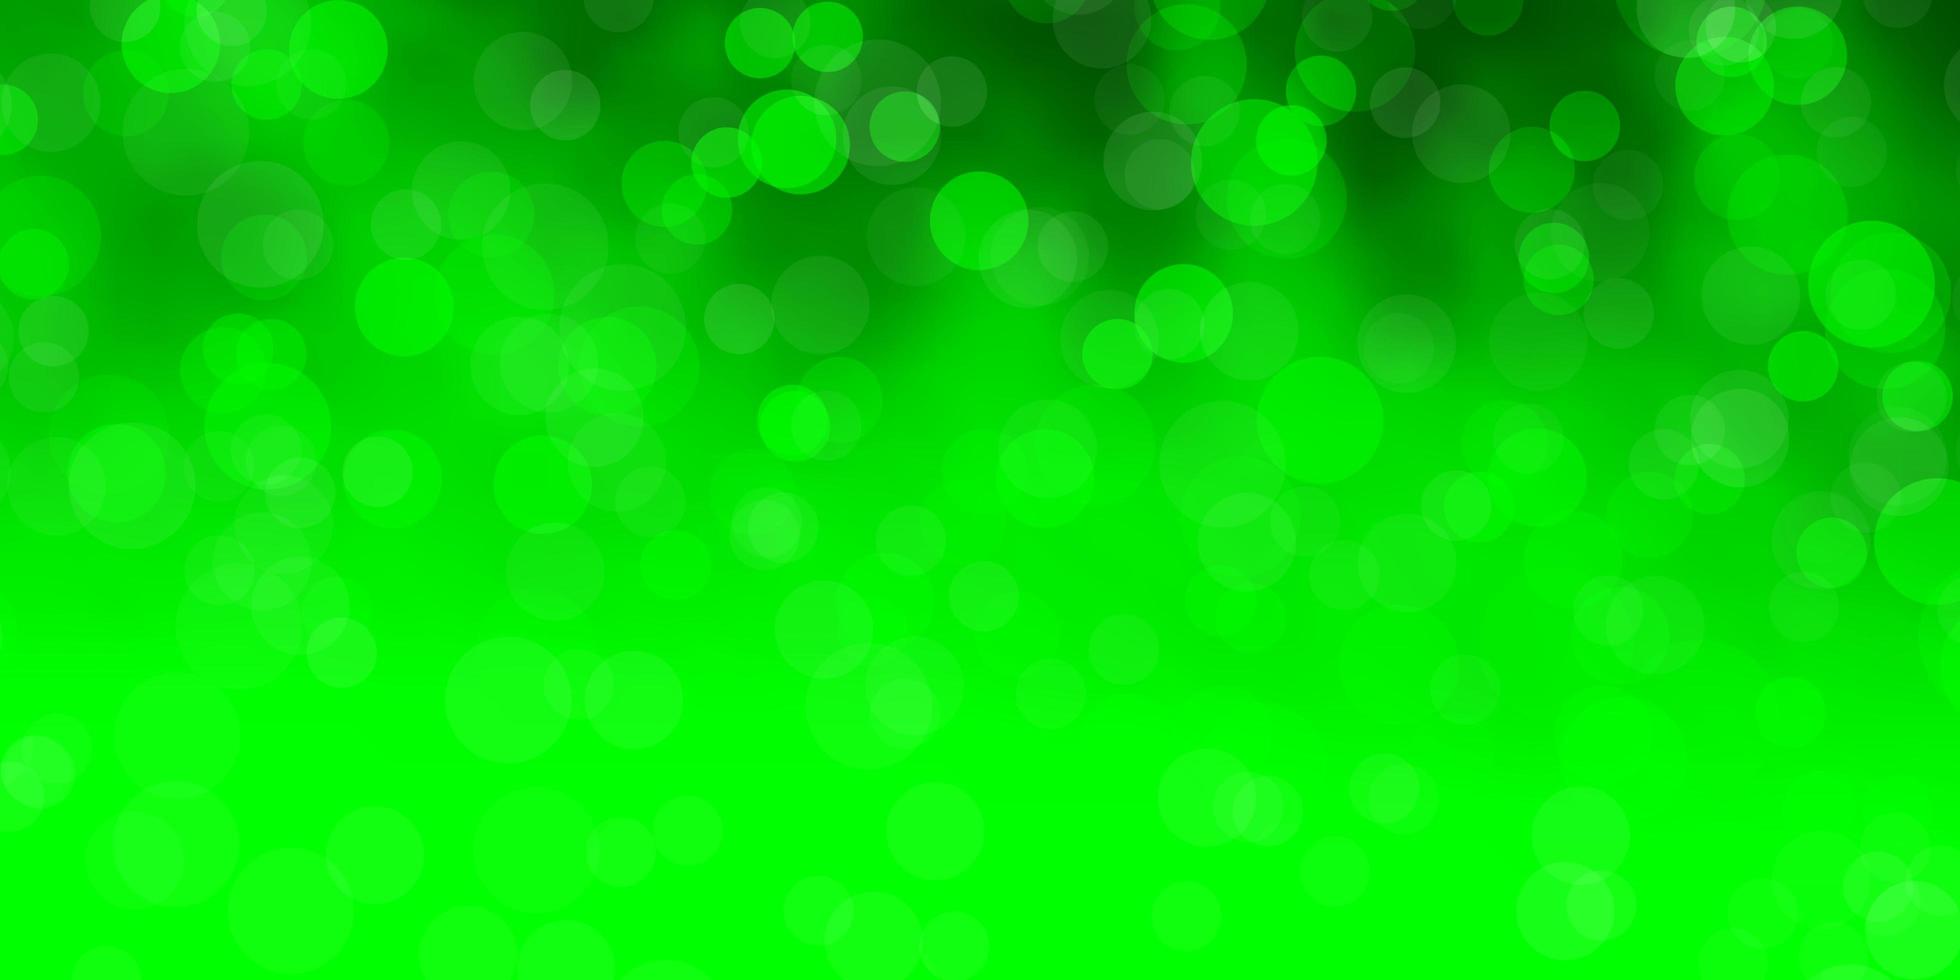 patrón de vector verde claro con círculos.